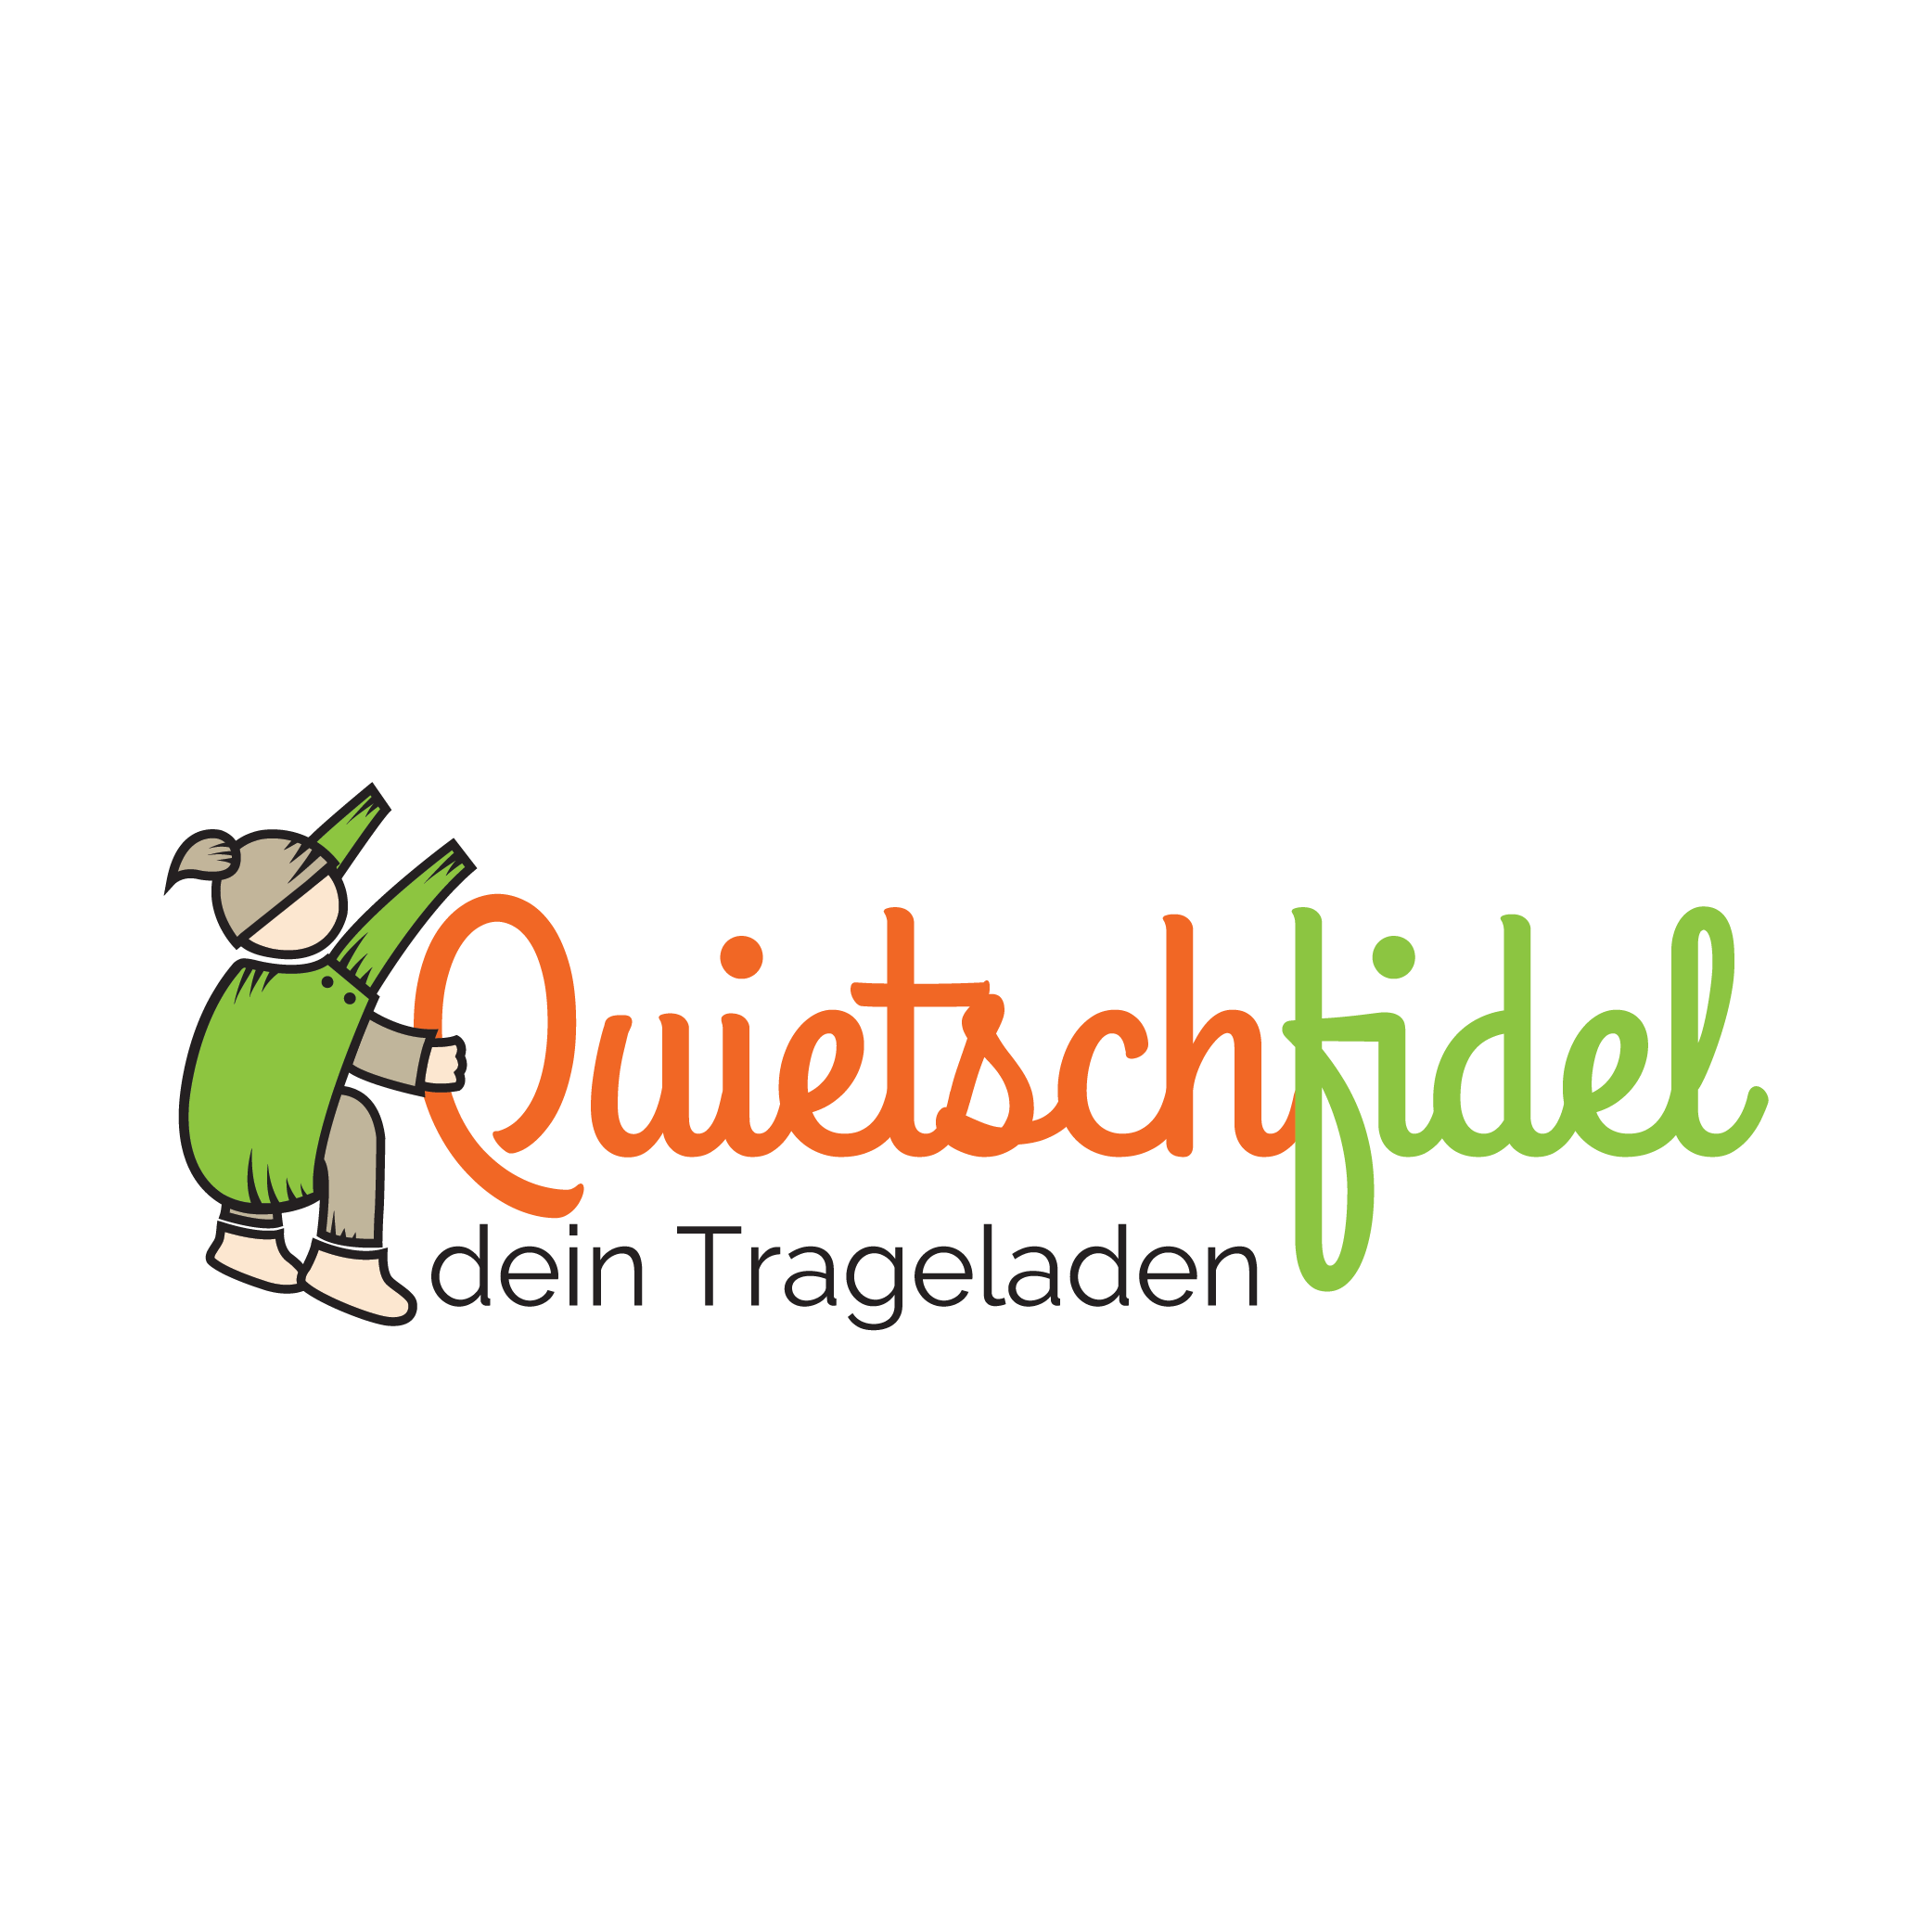 Quietschfidel